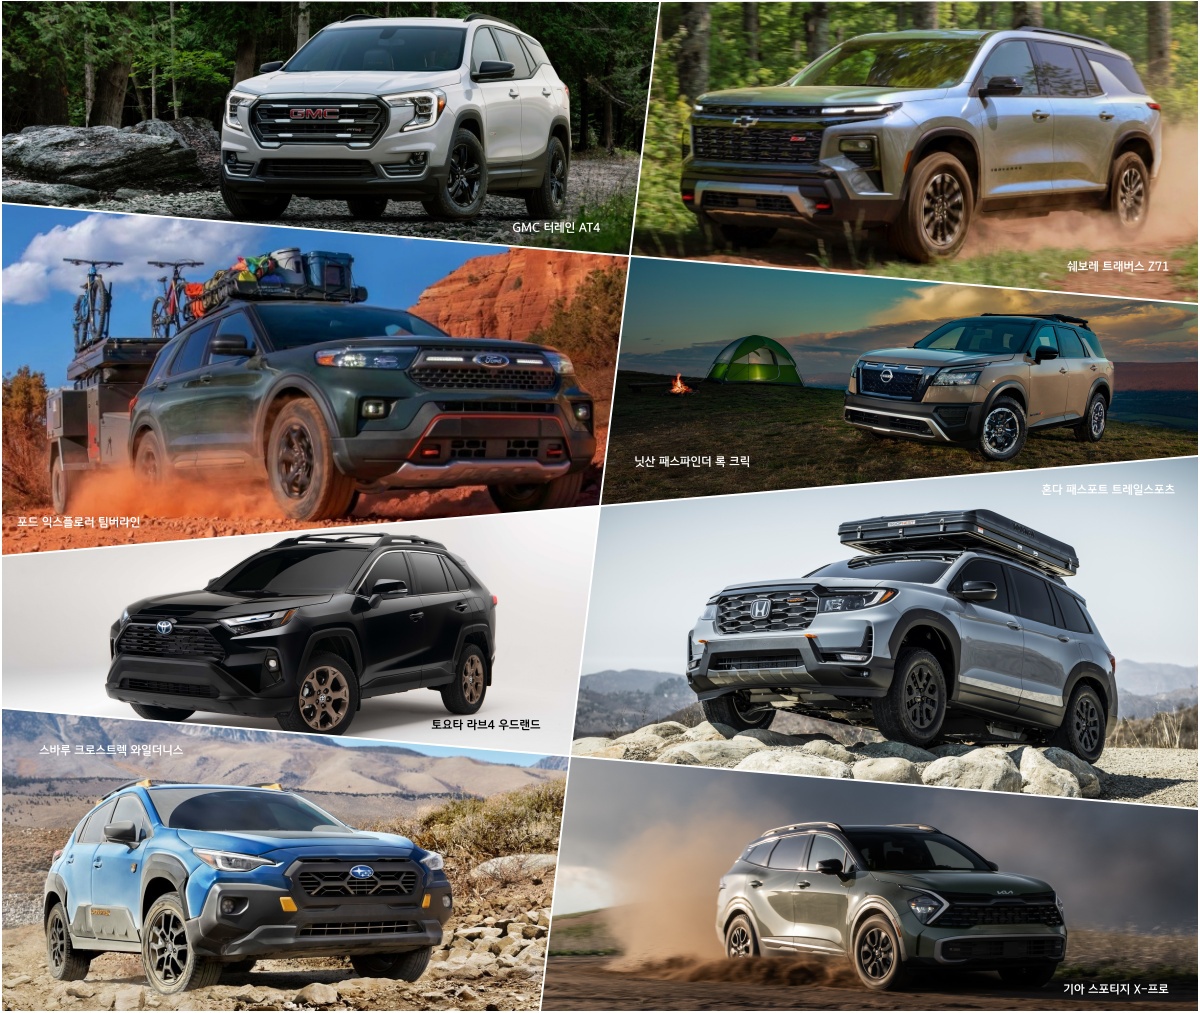 미국 시장에서 주로 확인할 수 있는 오프로드 특화형 'SUV'들의 예시를 보여주는 사진. GMC와 쉐보레, 포드 등 다양한 제조사에서의 모델링이 첨부되어 있음.